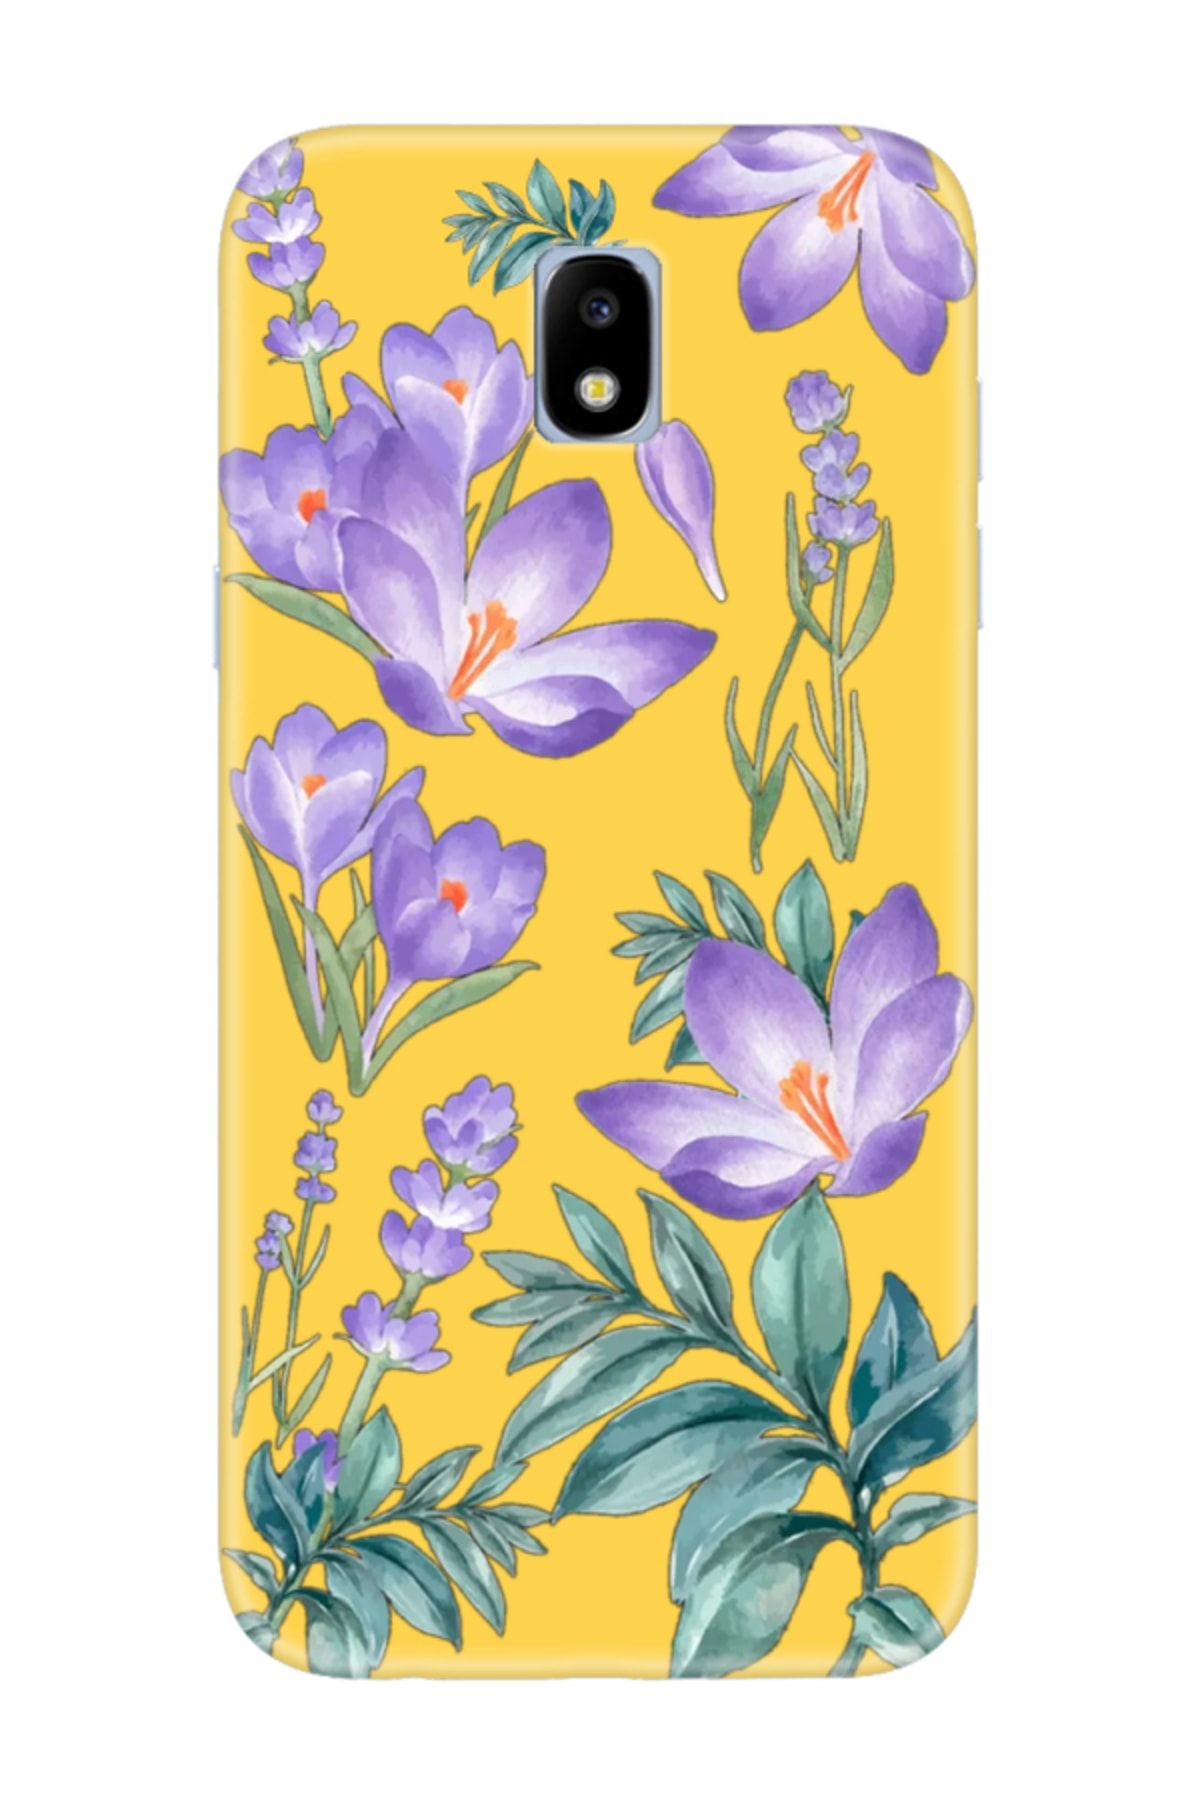 frondcase Samsung J7 Pro Kış Çiçeği Sarı Telefon Kılıfı